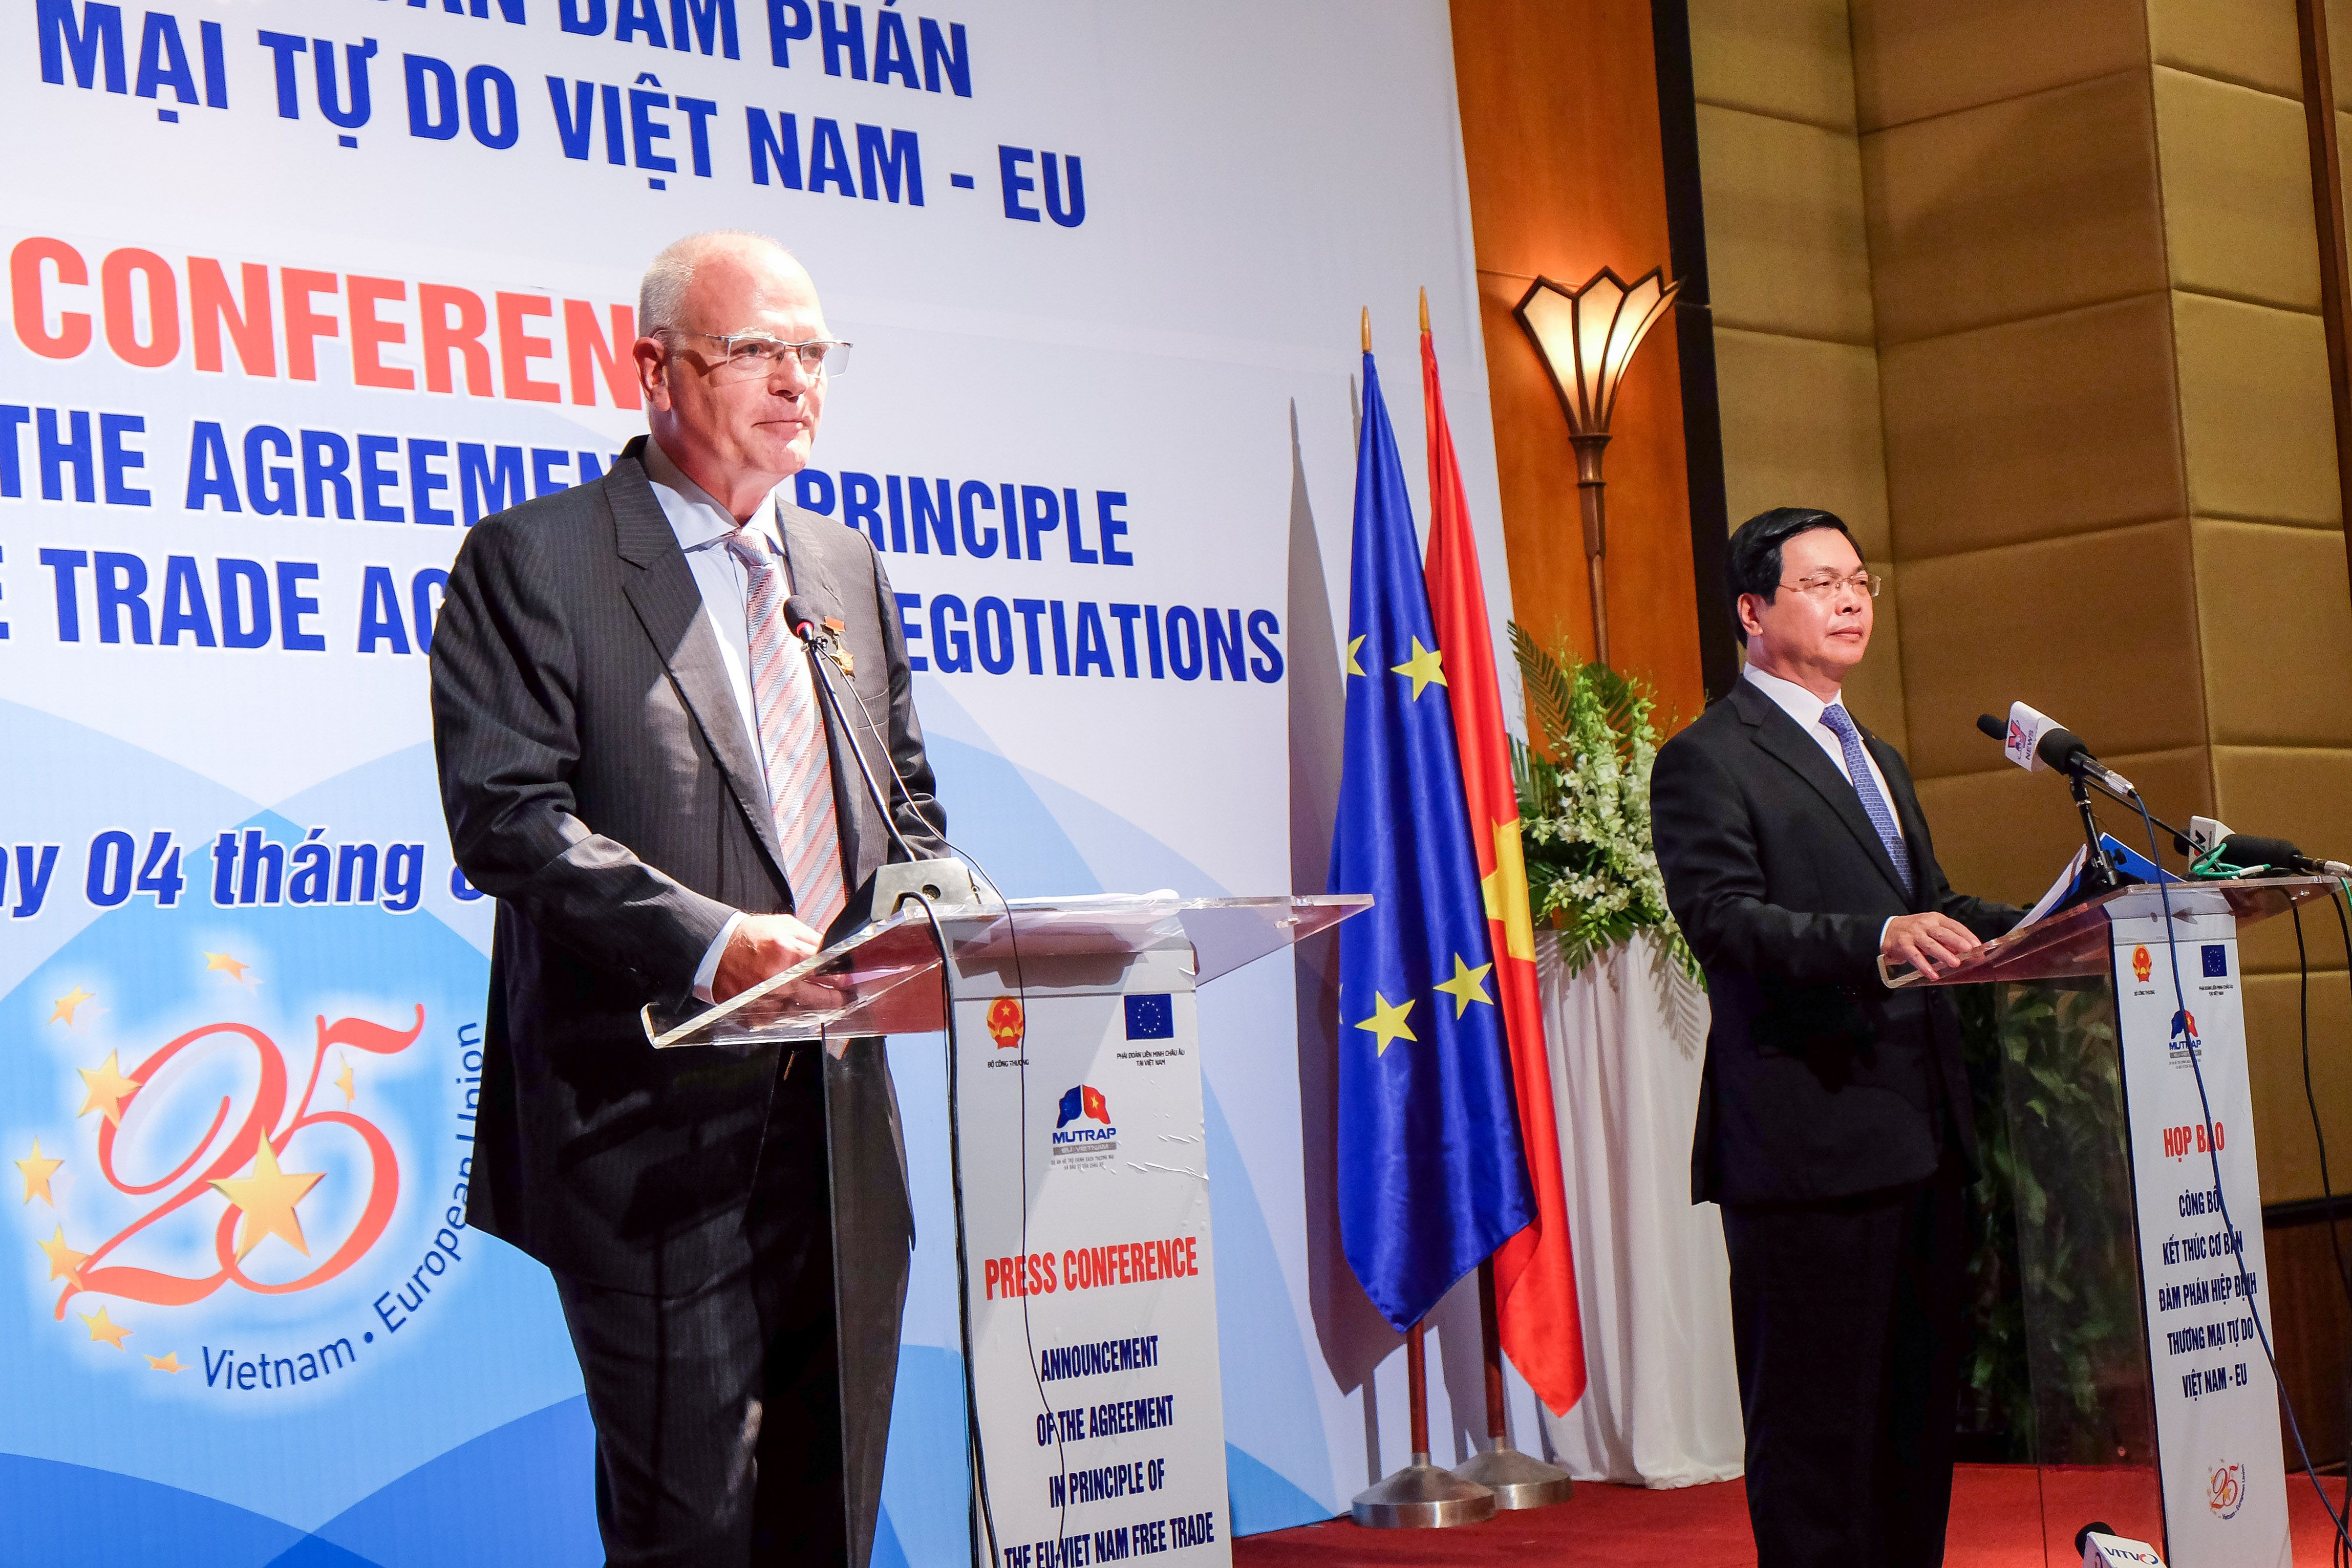 La conférence de presse pour annoncer l’achèvement des négociations de l’Accord de libre-échange Vietnam-UE a eu lieu le 4 août 2015.